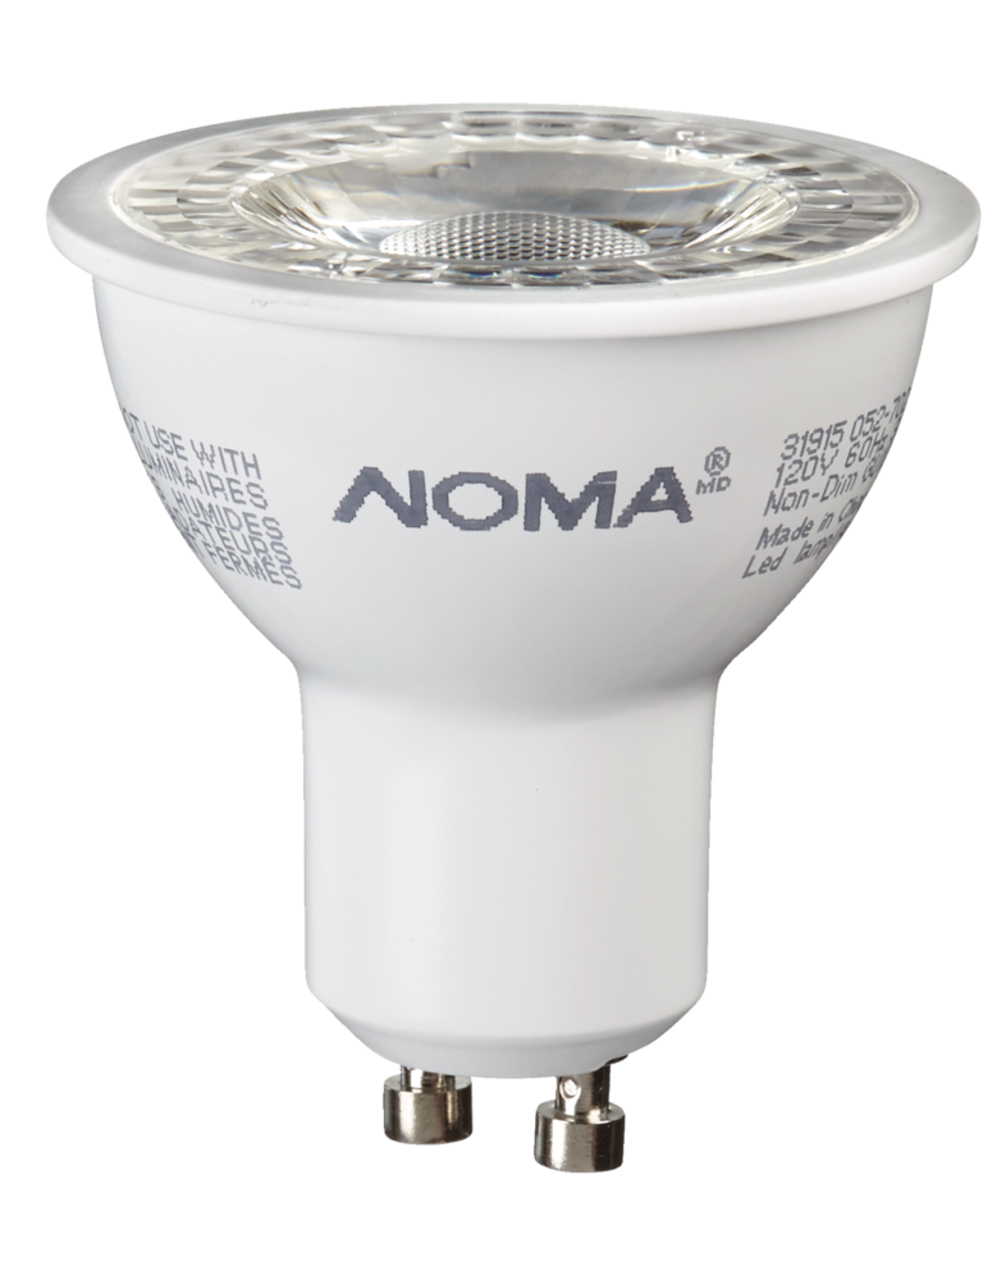 Optoélectronique - Ampoules - LAMPE A LED Lampe led culot GU10